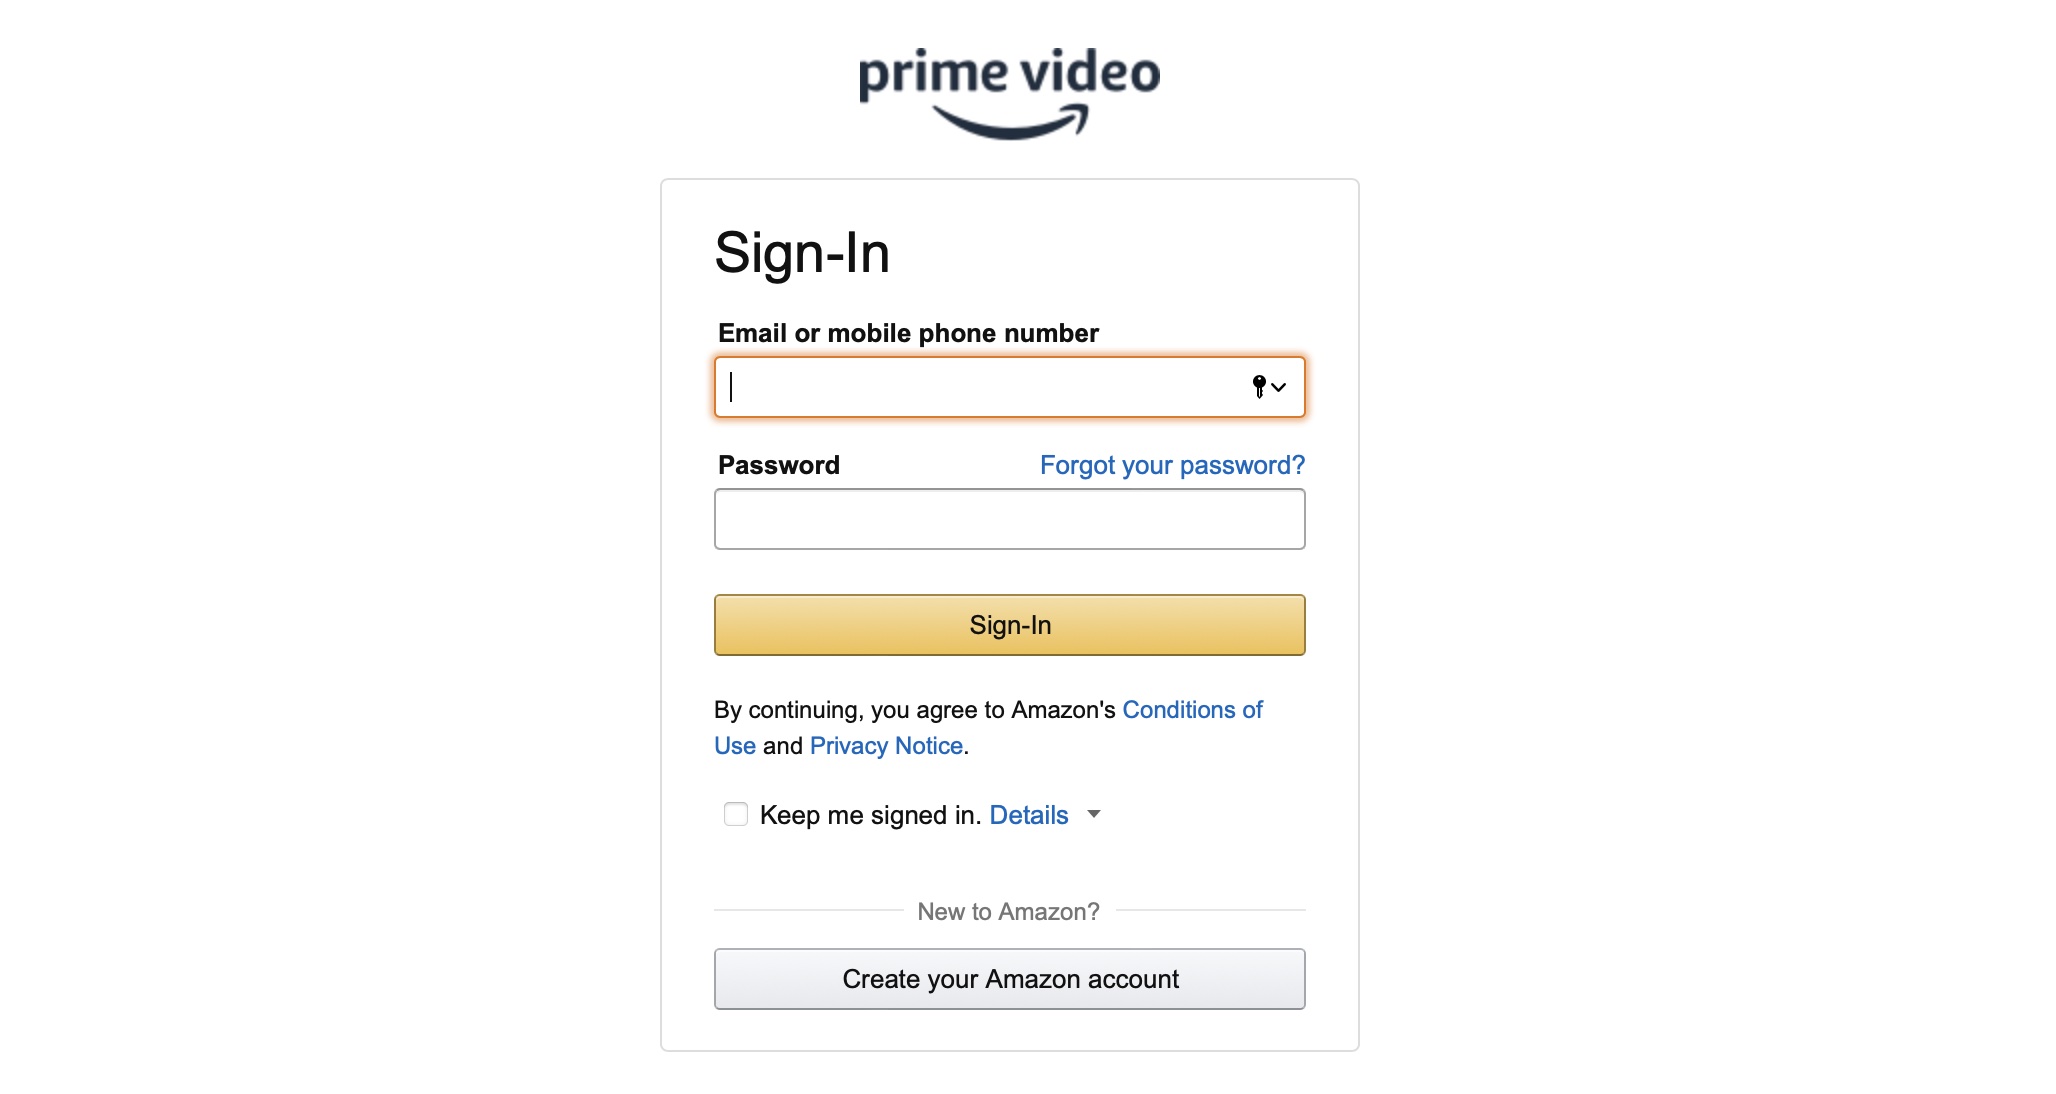 သင်၏ Amazon Prime Video အဖွဲ့ဝင်ခြင်းကို မည်သို့ပယ်ဖျက်မည်နည်း။